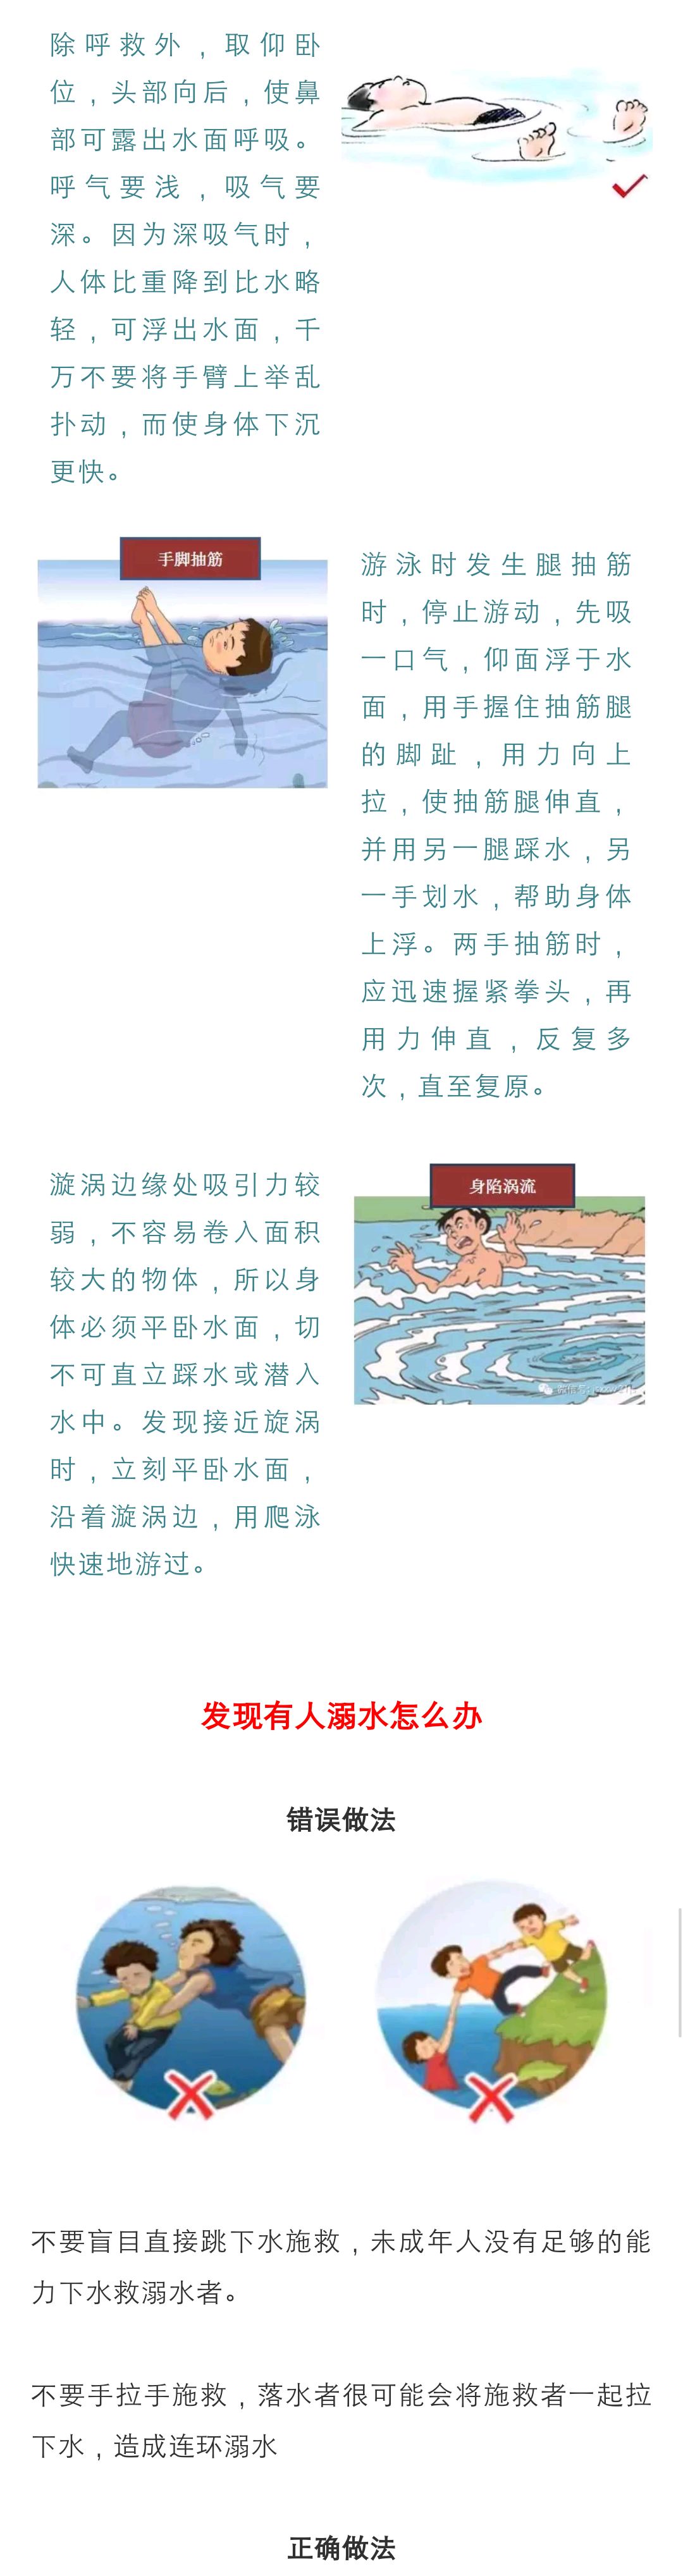 【快乐假期】安全快乐过暑假——之中小学生防溺水攻略